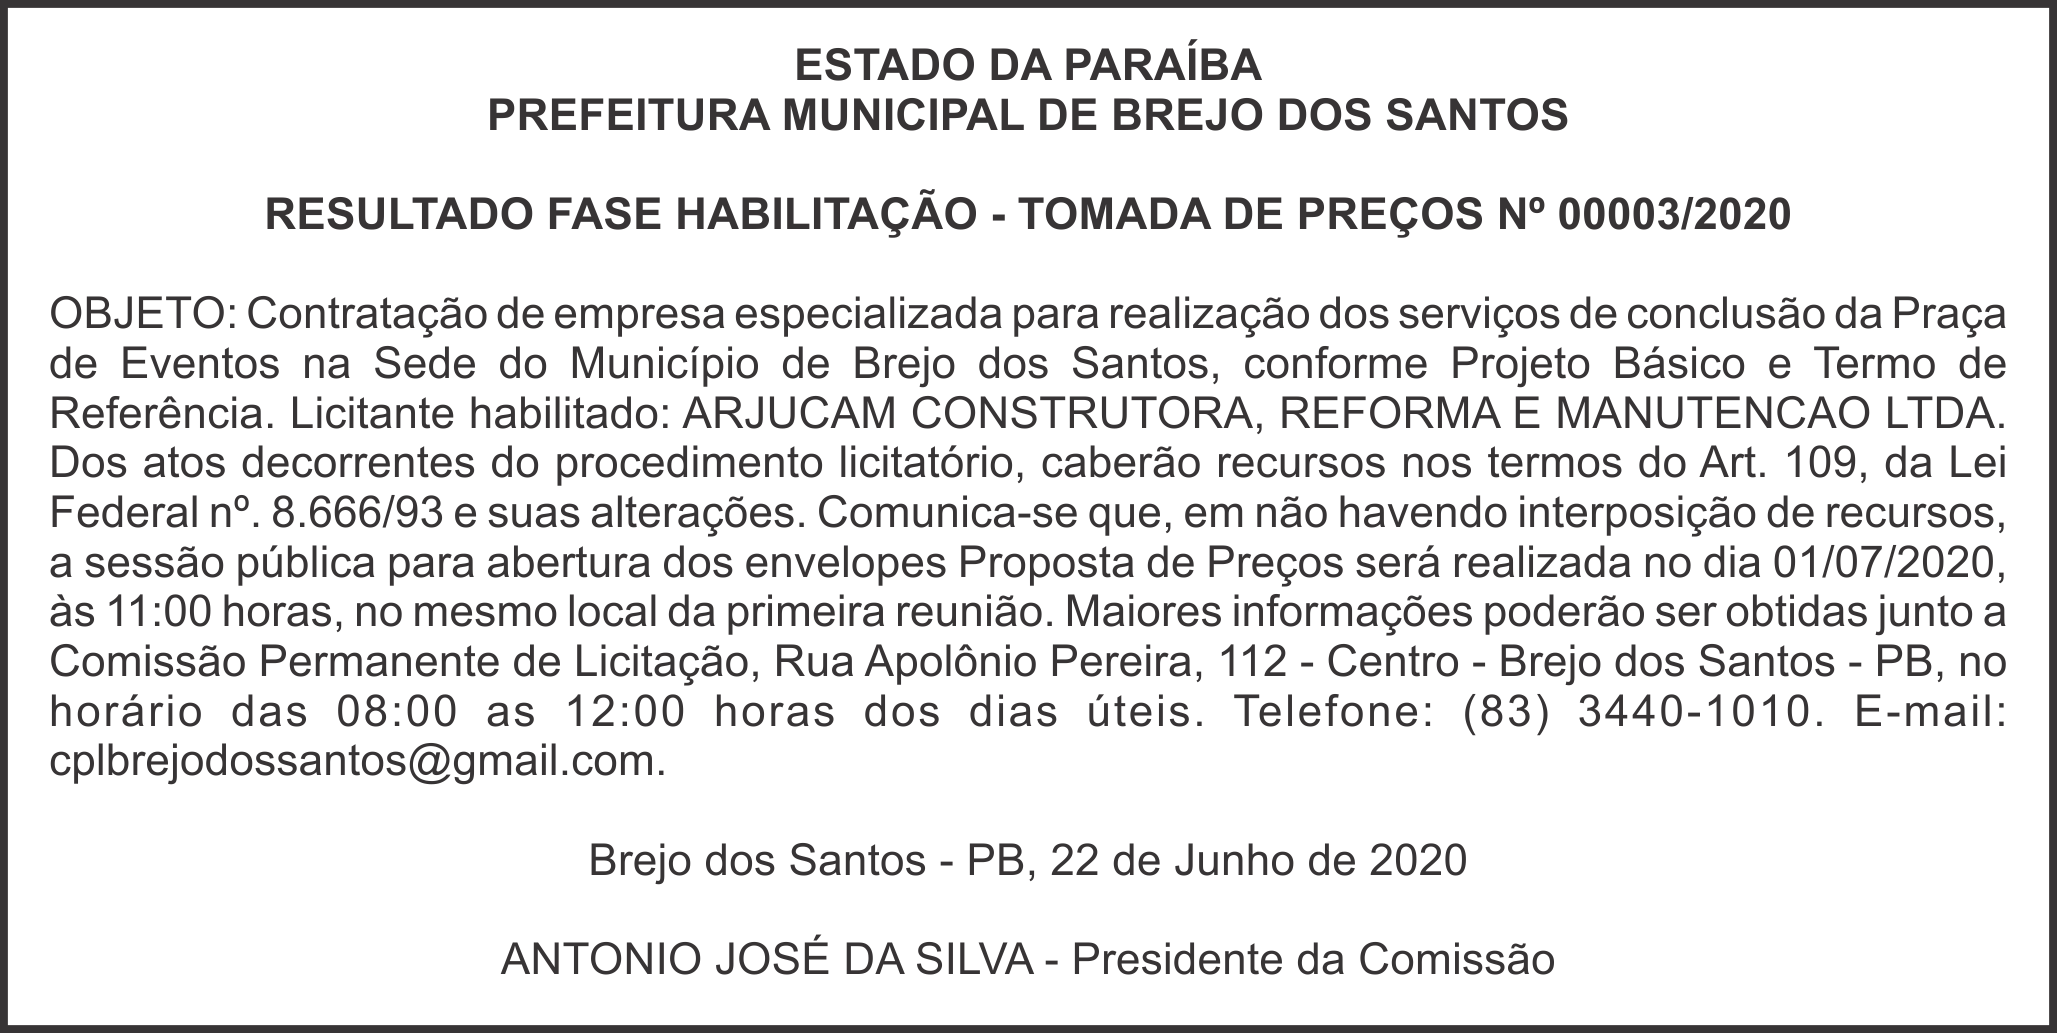 PREFEITURA MUNICIPAL DE BREJO DOS SANTOS – RESULTADO FASE HABILITAÇÃO – TOMADA DE PREÇOS Nº 00003/2020